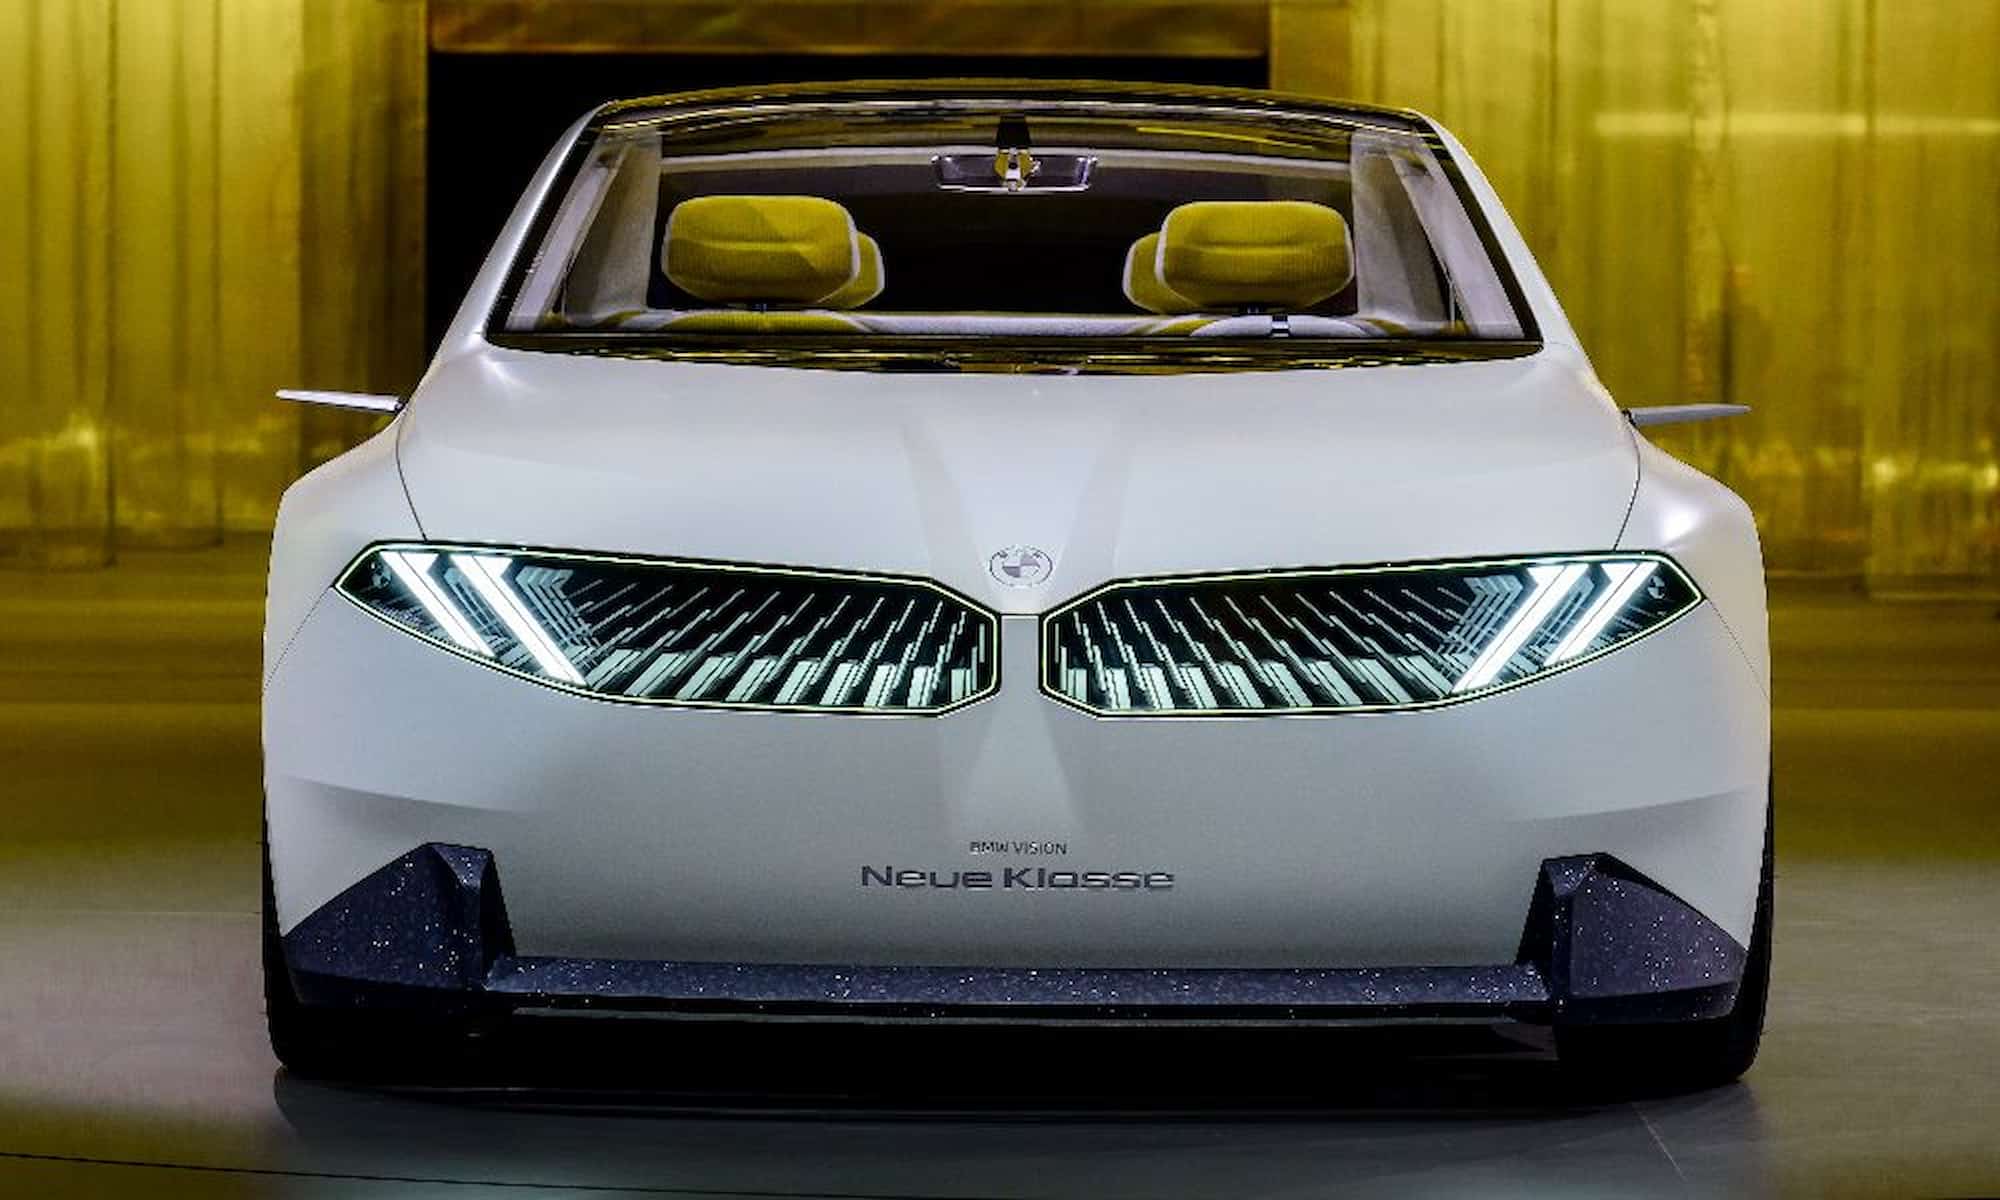 bmw neue klasse concept previews 3 series size electric sedan due 2025 carandbike 3 949ab64d08